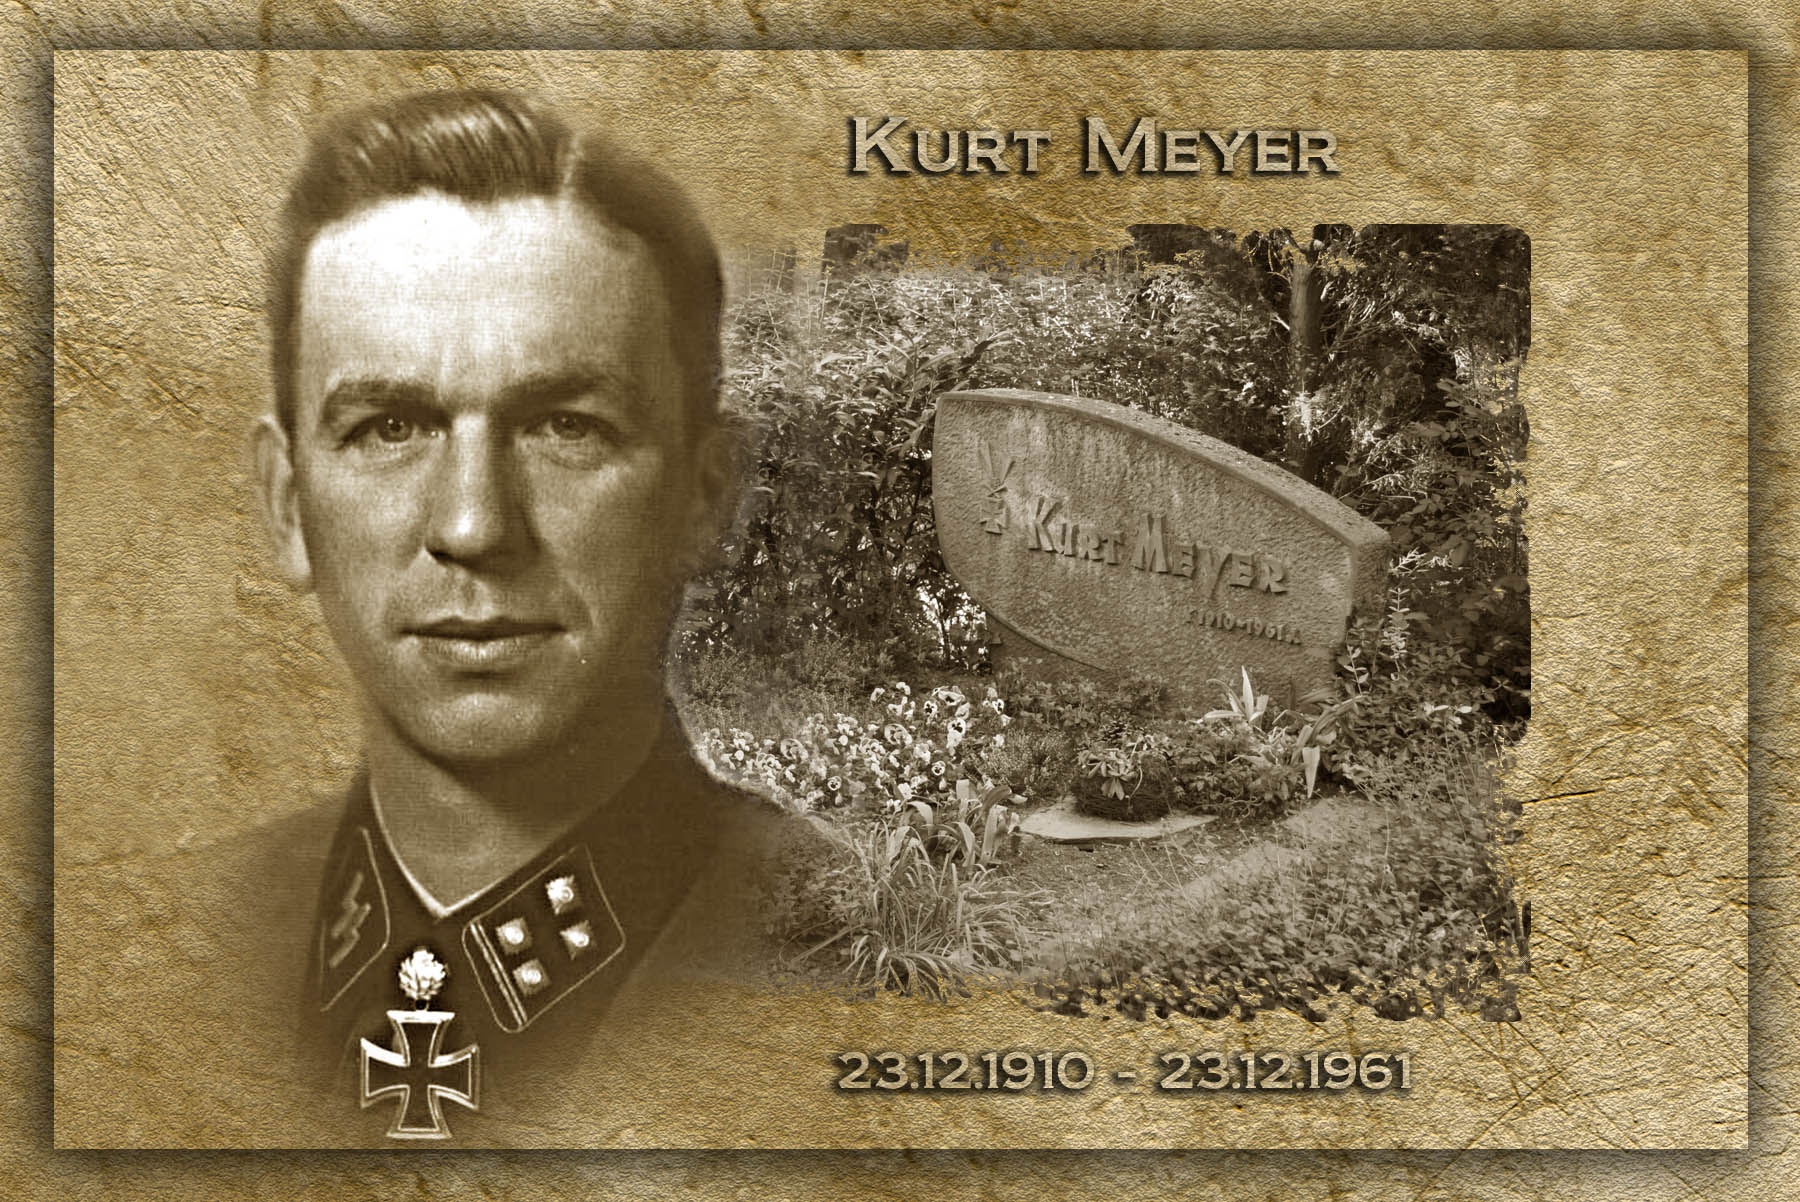 1_Kurt_Meyer_1910-1961.jpg